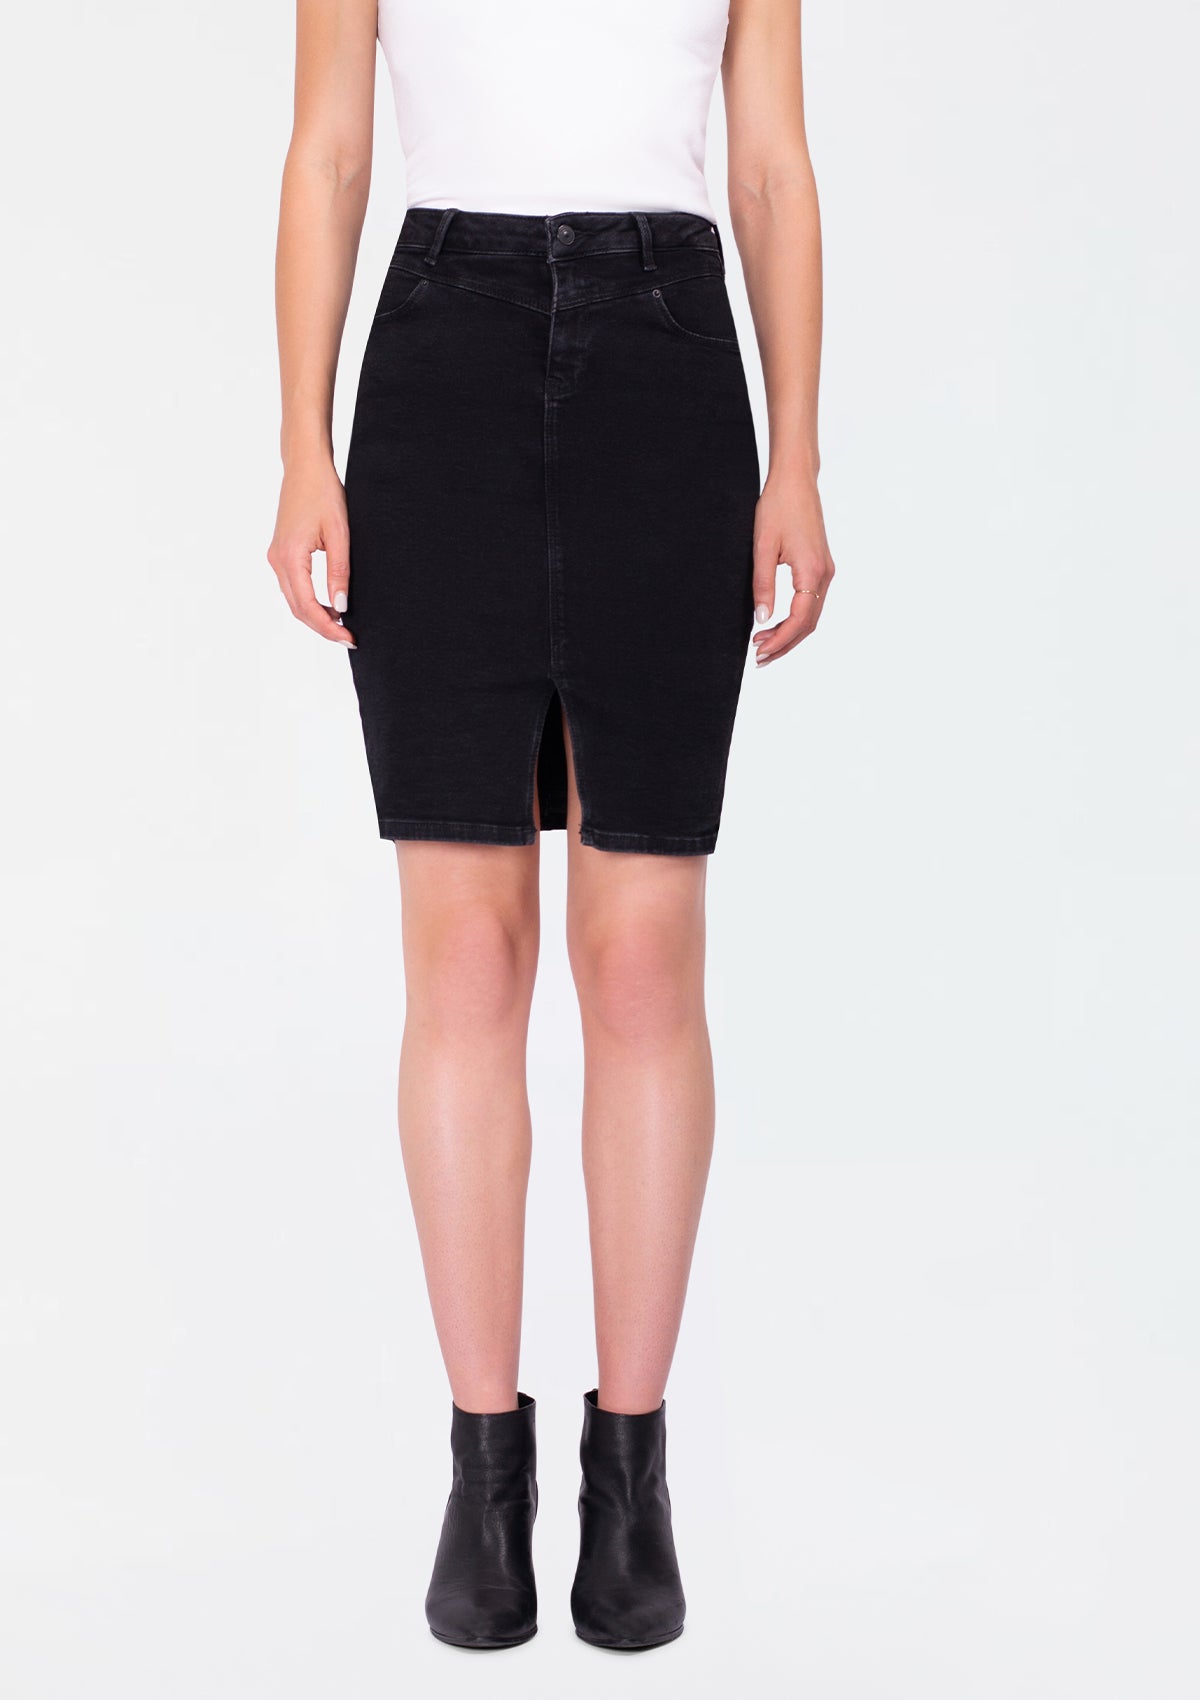 Rosaleen Black Denim Skirt